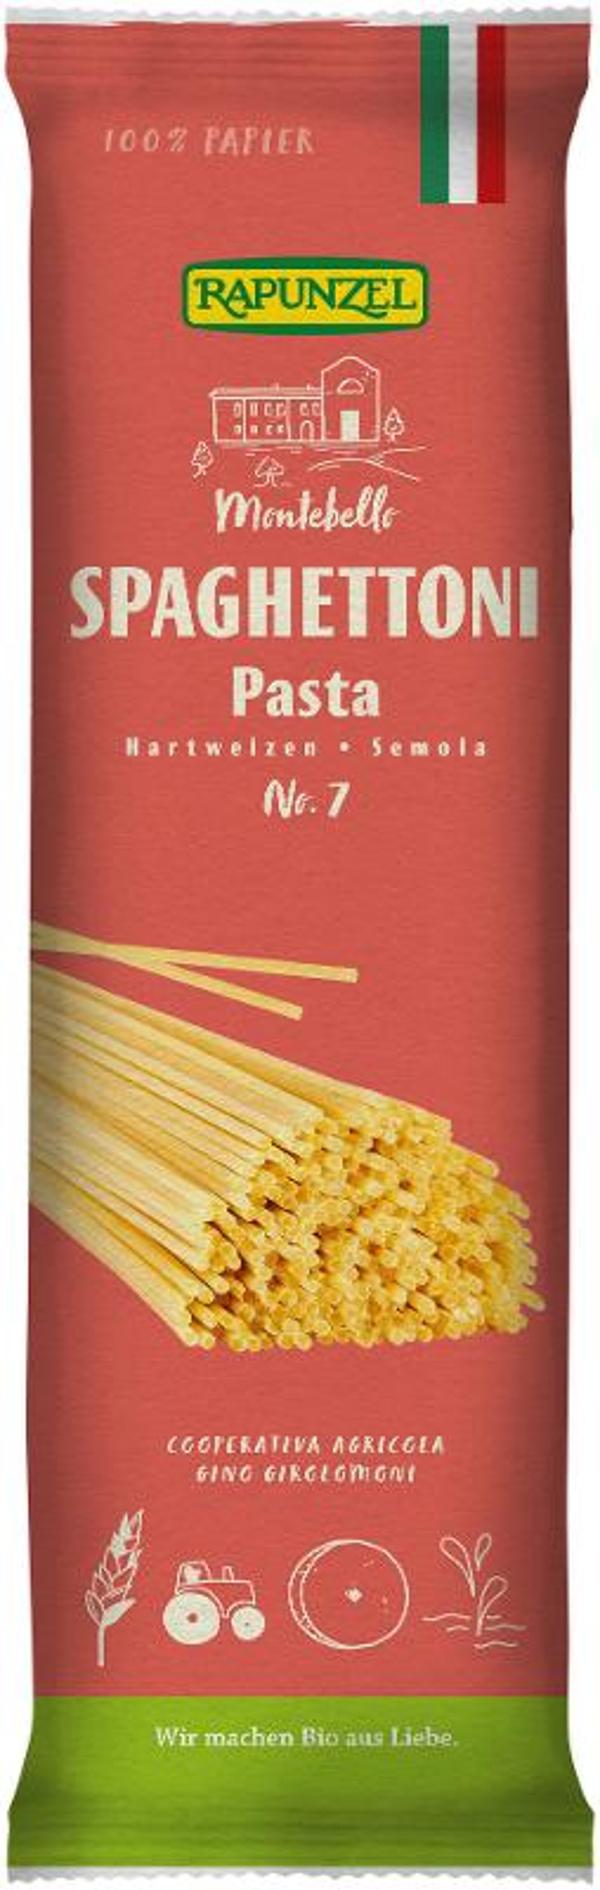 Produktfoto zu Spaghettoni Semola, no. 7